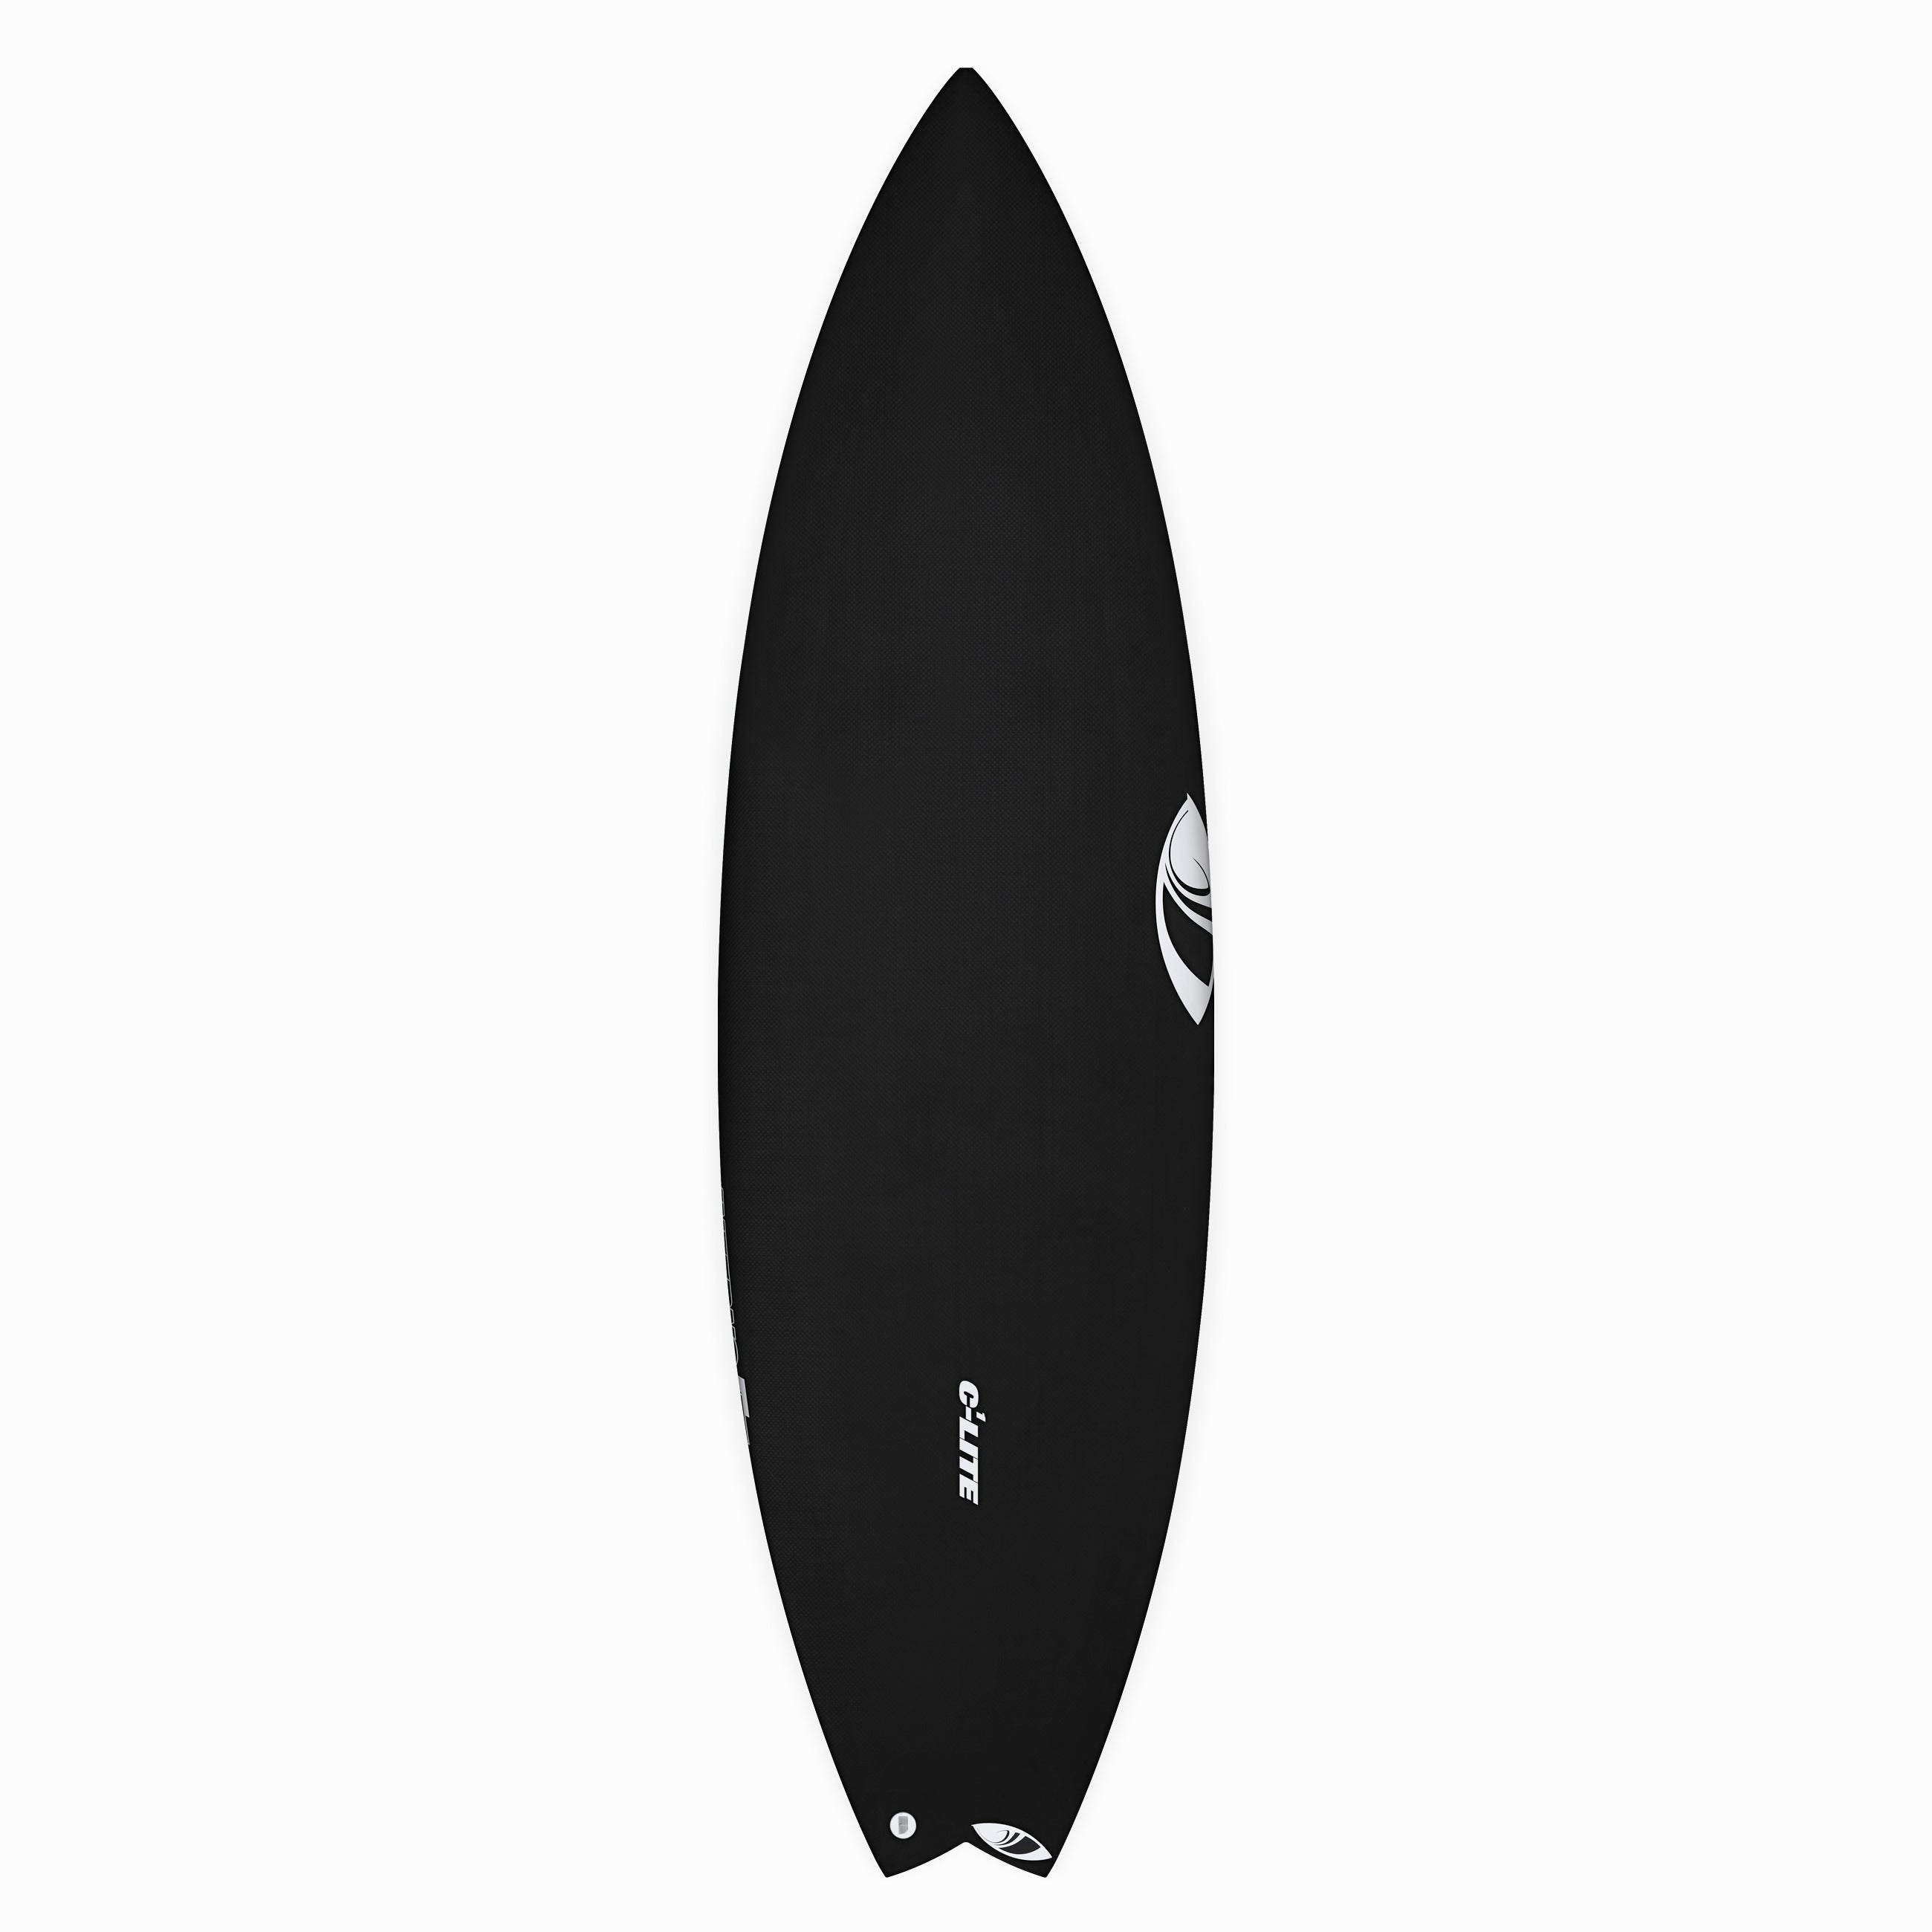 Full Range – SharpEye Surfboards Australia